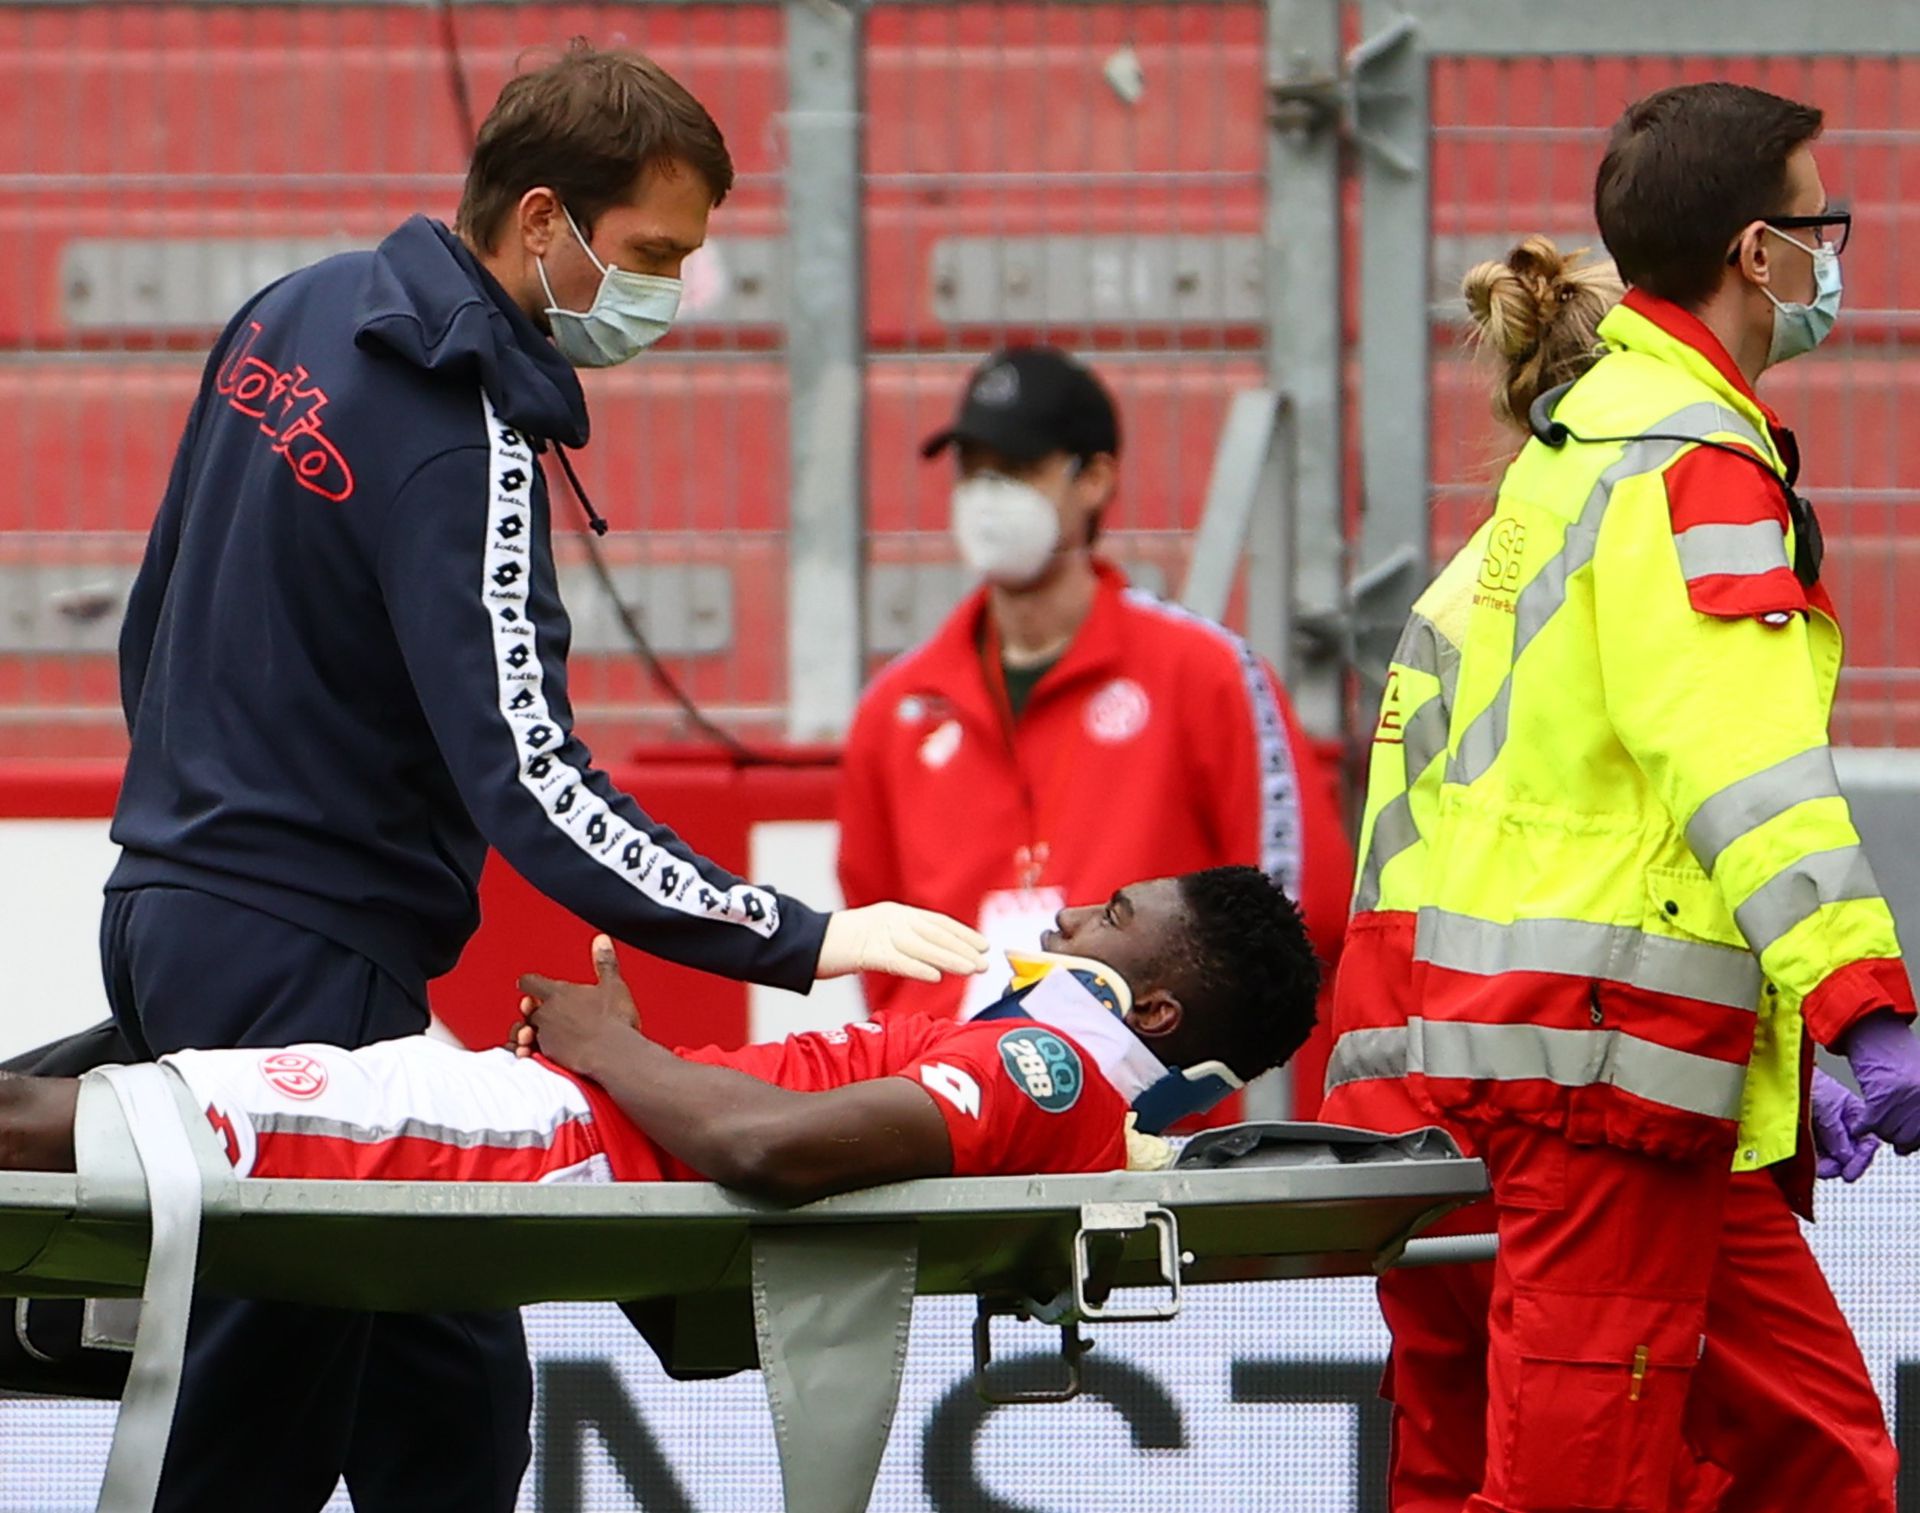 Taiwo Awoniyi eszméletlenül esett össze a pályán, a focibíró gyorsan cselekedett, amíg nem érkezett meg az orvosi stáb a pályára / Fotó: Getty Images